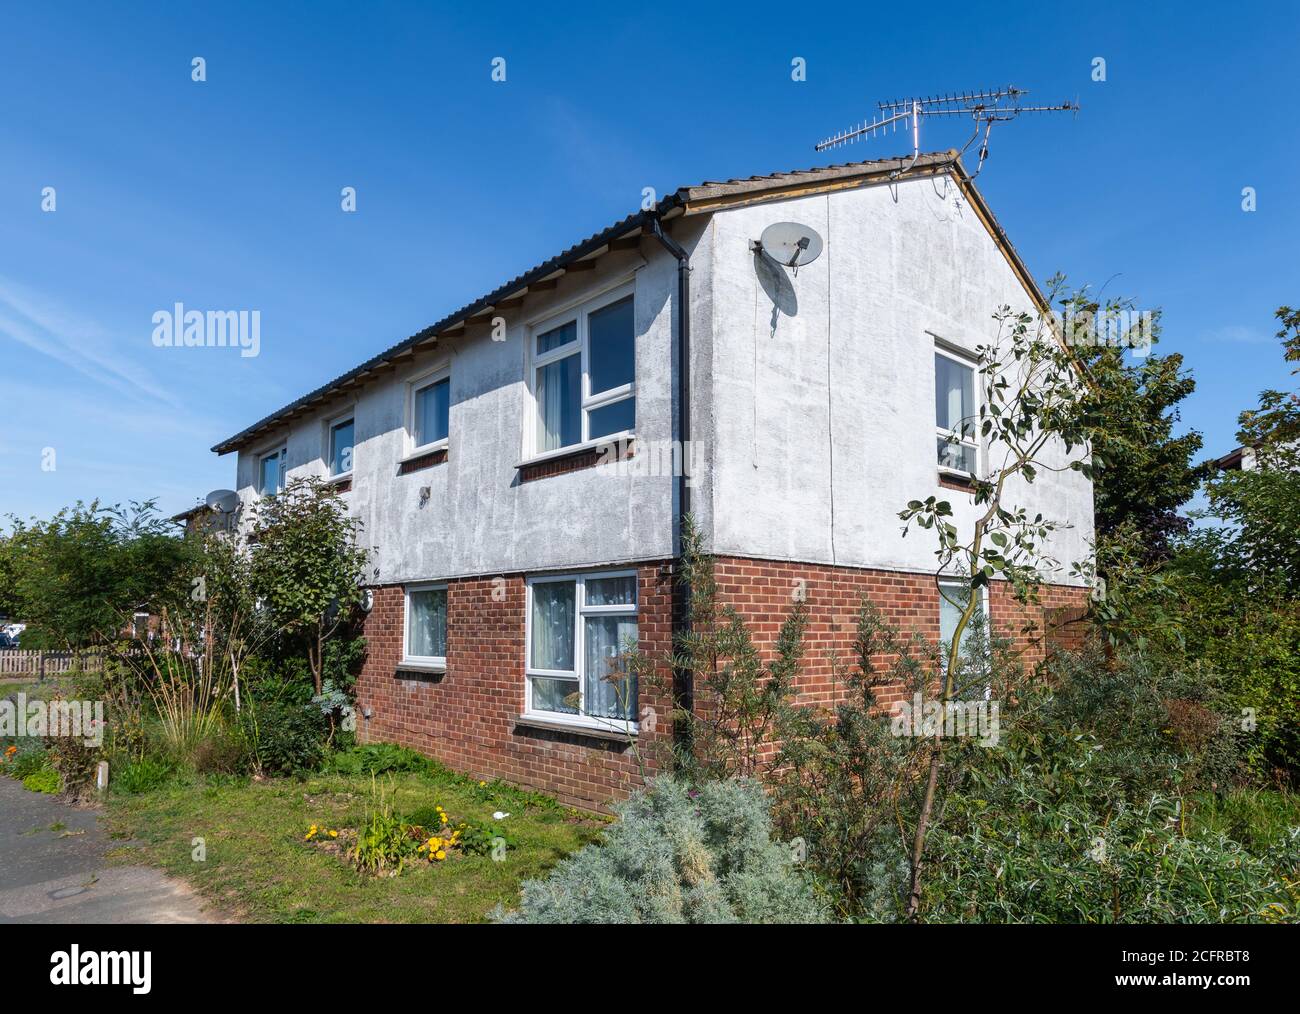 Hinter einem kleinen, modernen 2-stöckigen Wohngebäude/Appartementblock mit ungepflegtem, unordentlichem, chaotischem, überwuchertem Garten in England, Großbritannien. Stockfoto